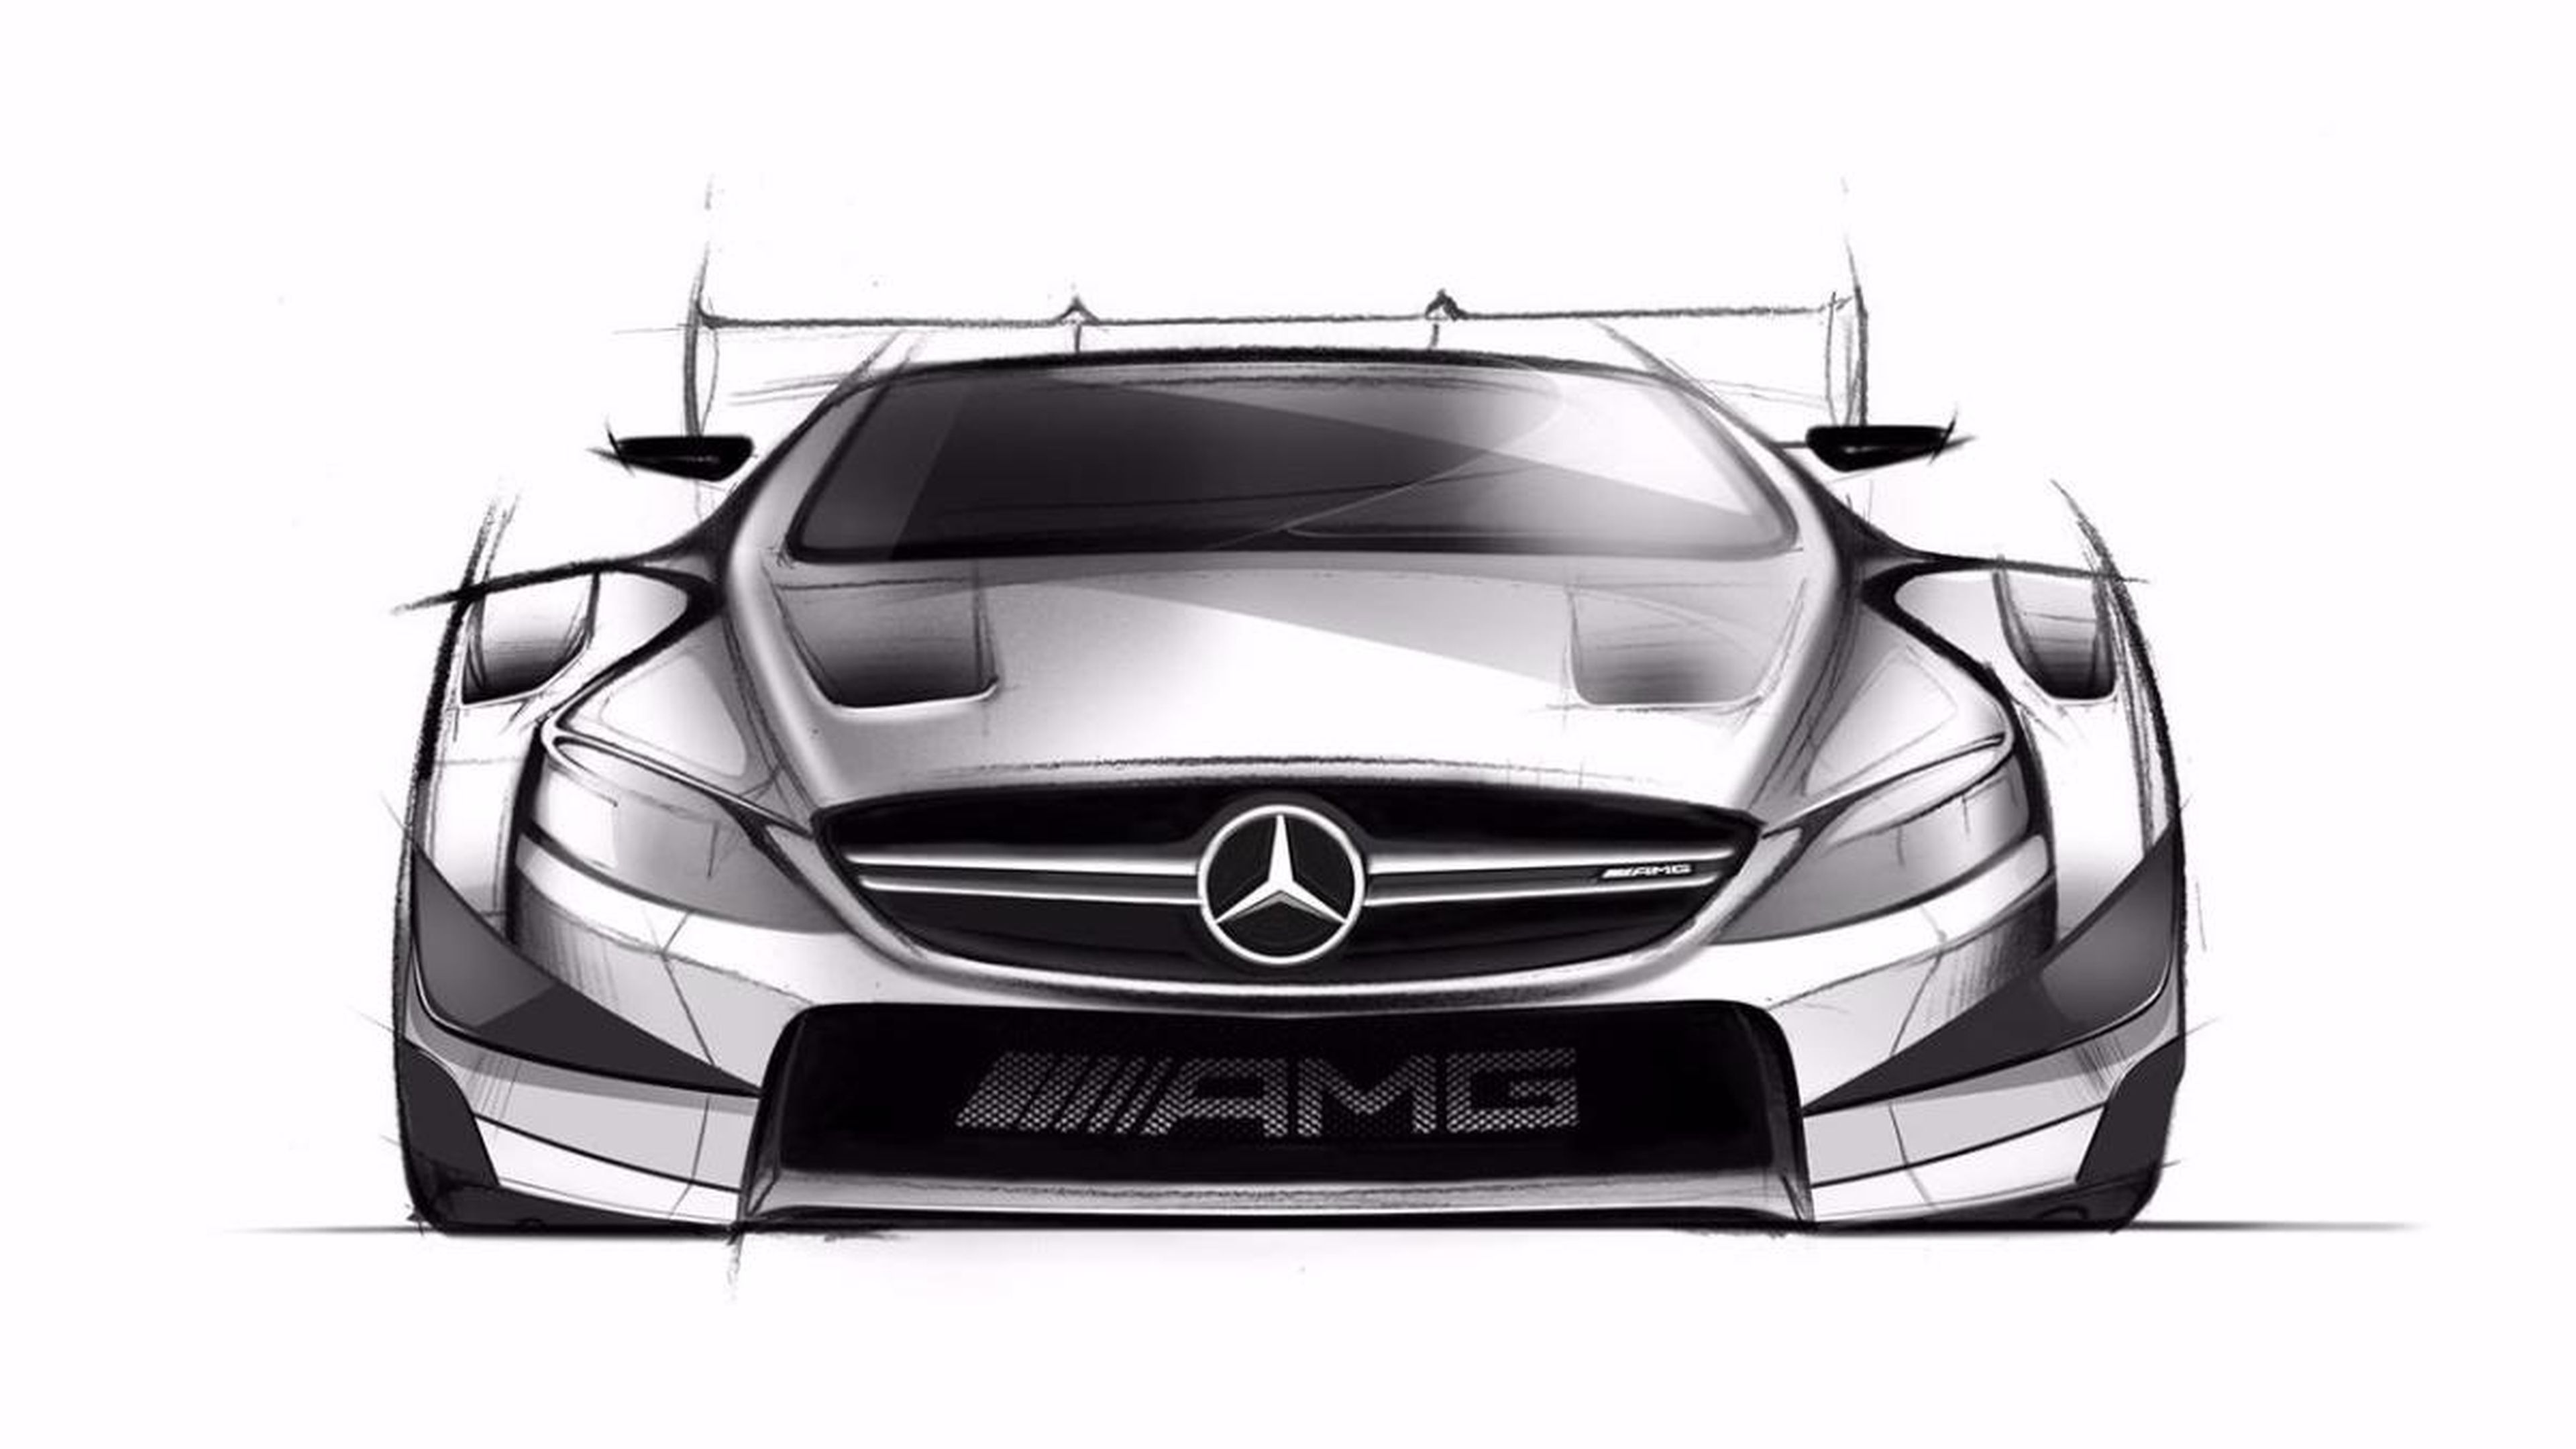 Mercedes-AMG C63 DTM 2016 frontal